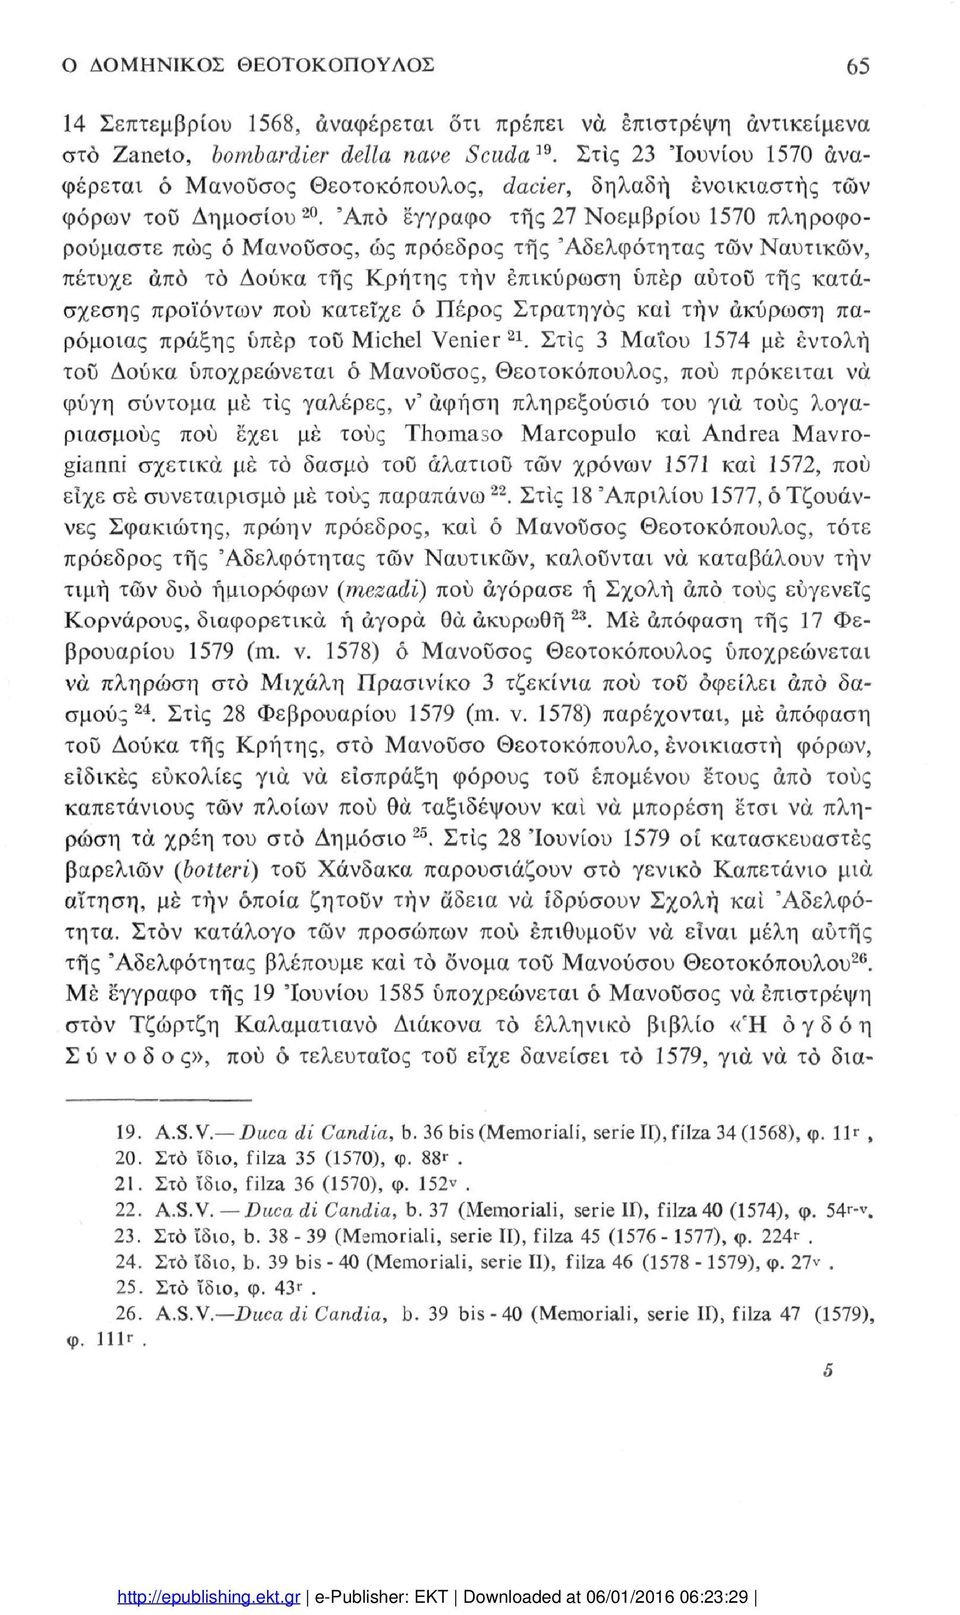 'Από έγγραφο της 27 Νοεμβρίου 1570 πληροφο ρούμαστε πώς ό Μανοΰσος, ως πρόεδρος της 'Αδελφότητας των Ναυτικών, πέτυχε άπό το Δούκα της Κρήτης τήν επικύρωση υπέρ αύτοϋ της κατά σχεσης προϊόντων πού